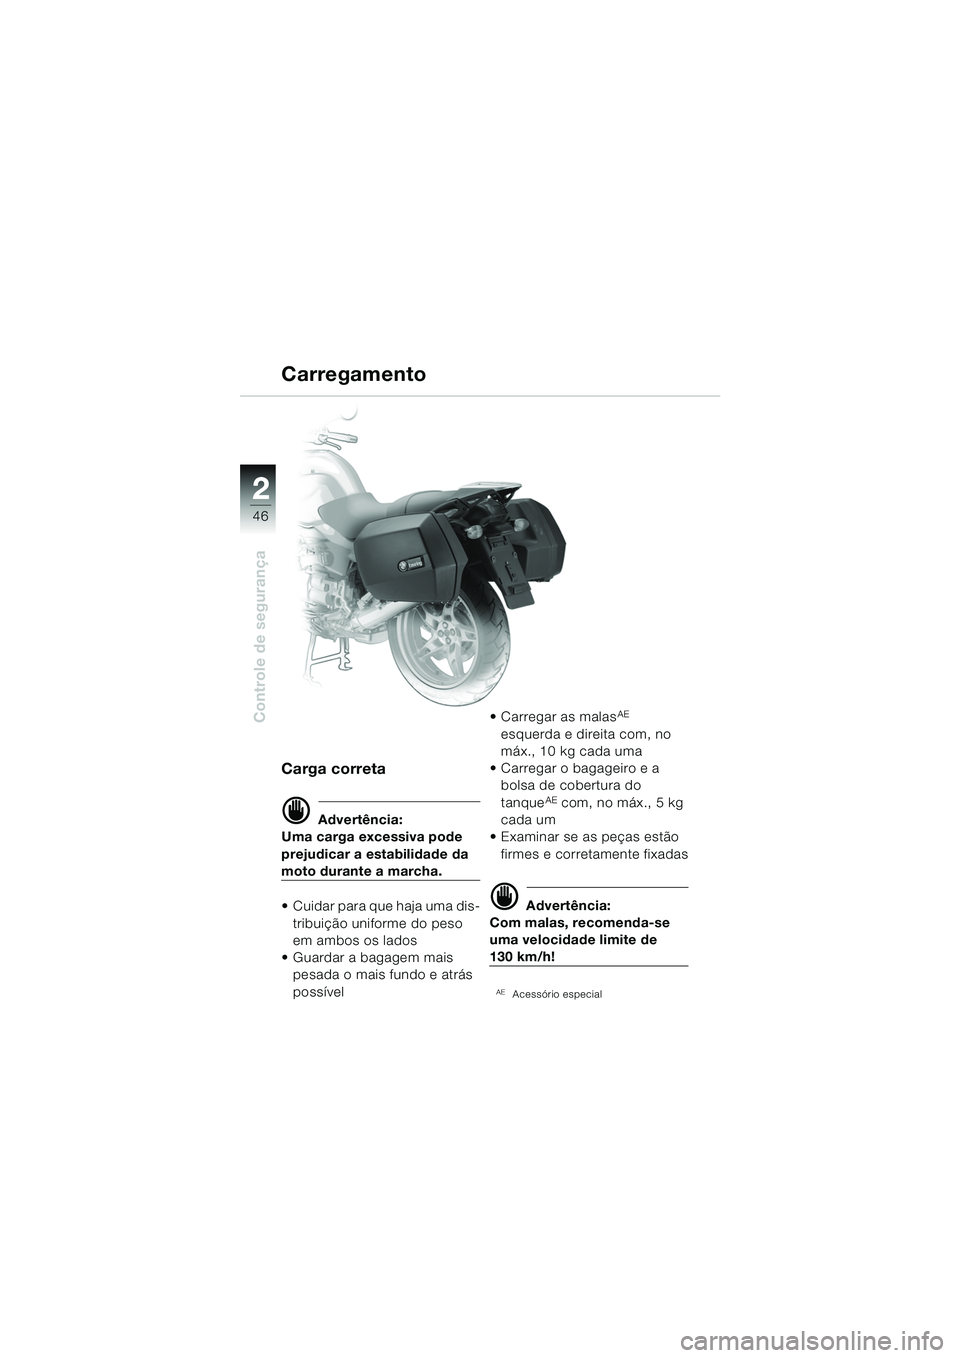 BMW MOTORRAD R 850 R 2004  Manual do condutor (in Portuguese) 22
46
Controle de segurança
Carregamento
Carga correta
d Advertência:
Uma carga excessiva pode 
prejudicar a estabilidade da 
moto durante a marcha.
 Cuidar para que haja uma dis-
tribuição unifo